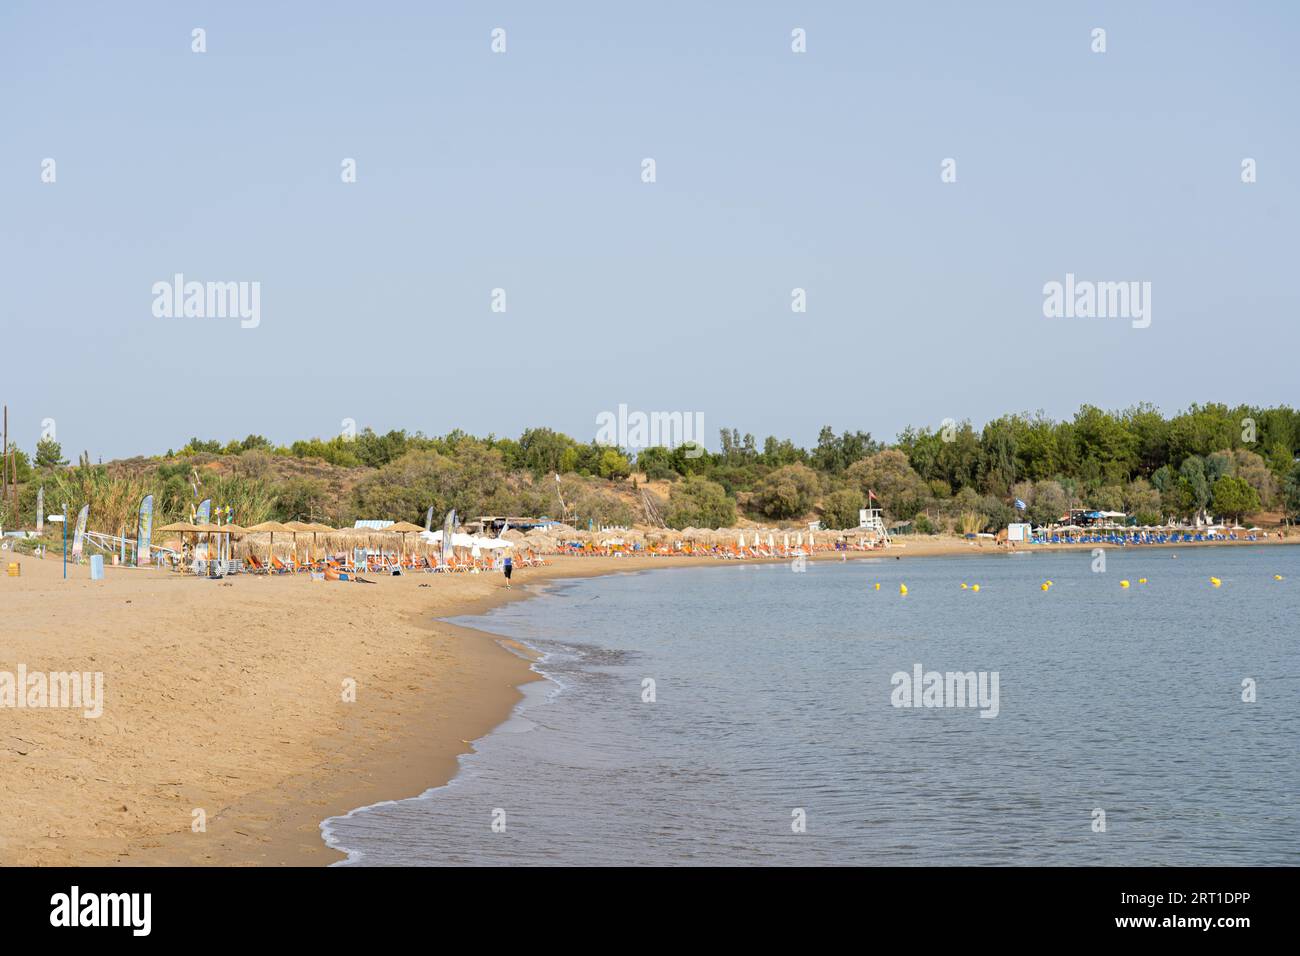 Crete, Greece, September 18, 2021: The so called Golden Beach near Chania town Stock Photo